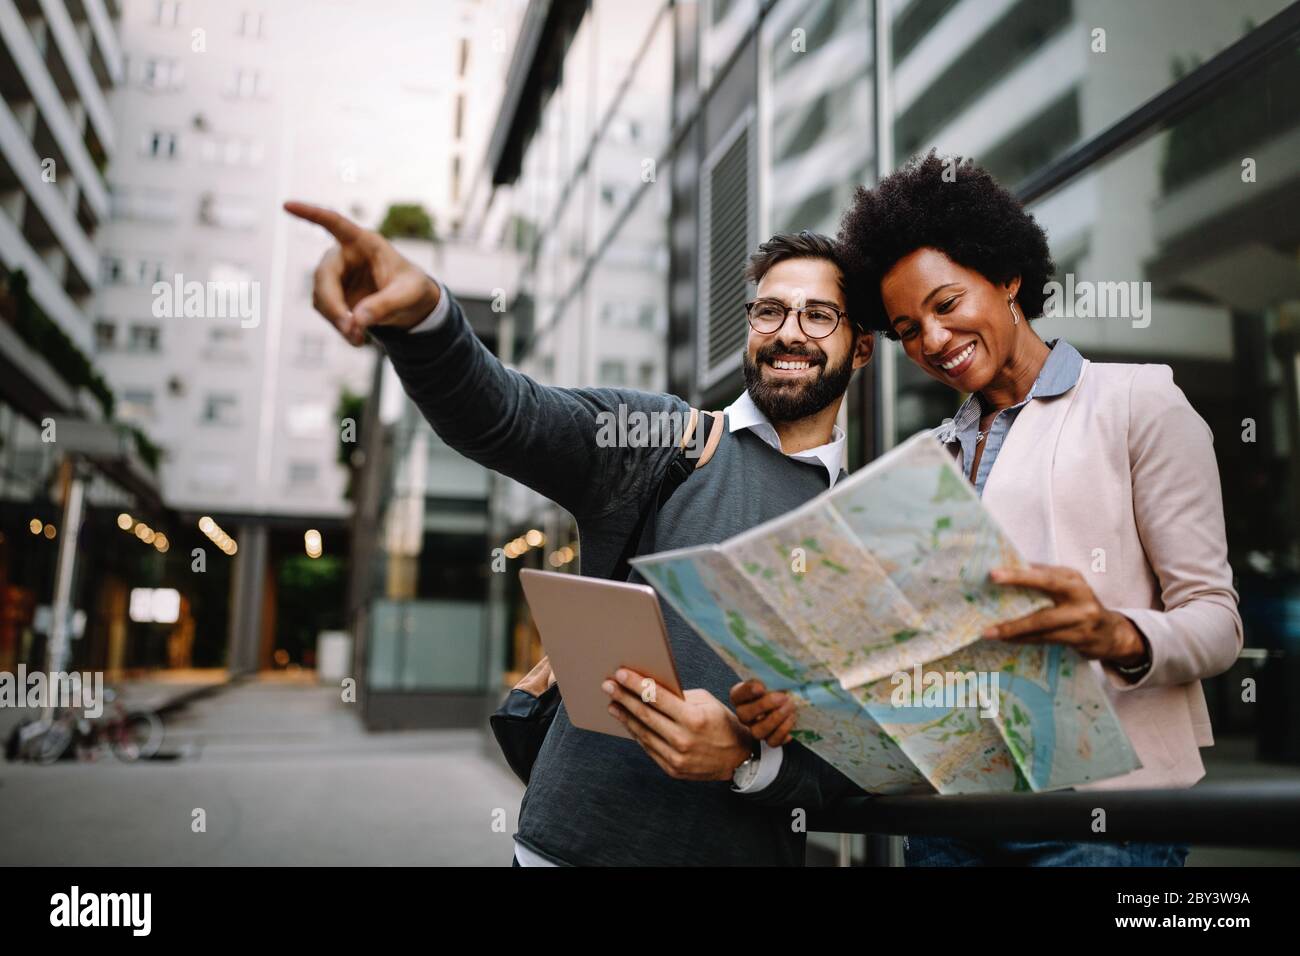 Verlorenes glückliches Paar in der Stadt, das eine Karte hält. Reisen, Tourismus, Menschen Konzept Stockfoto